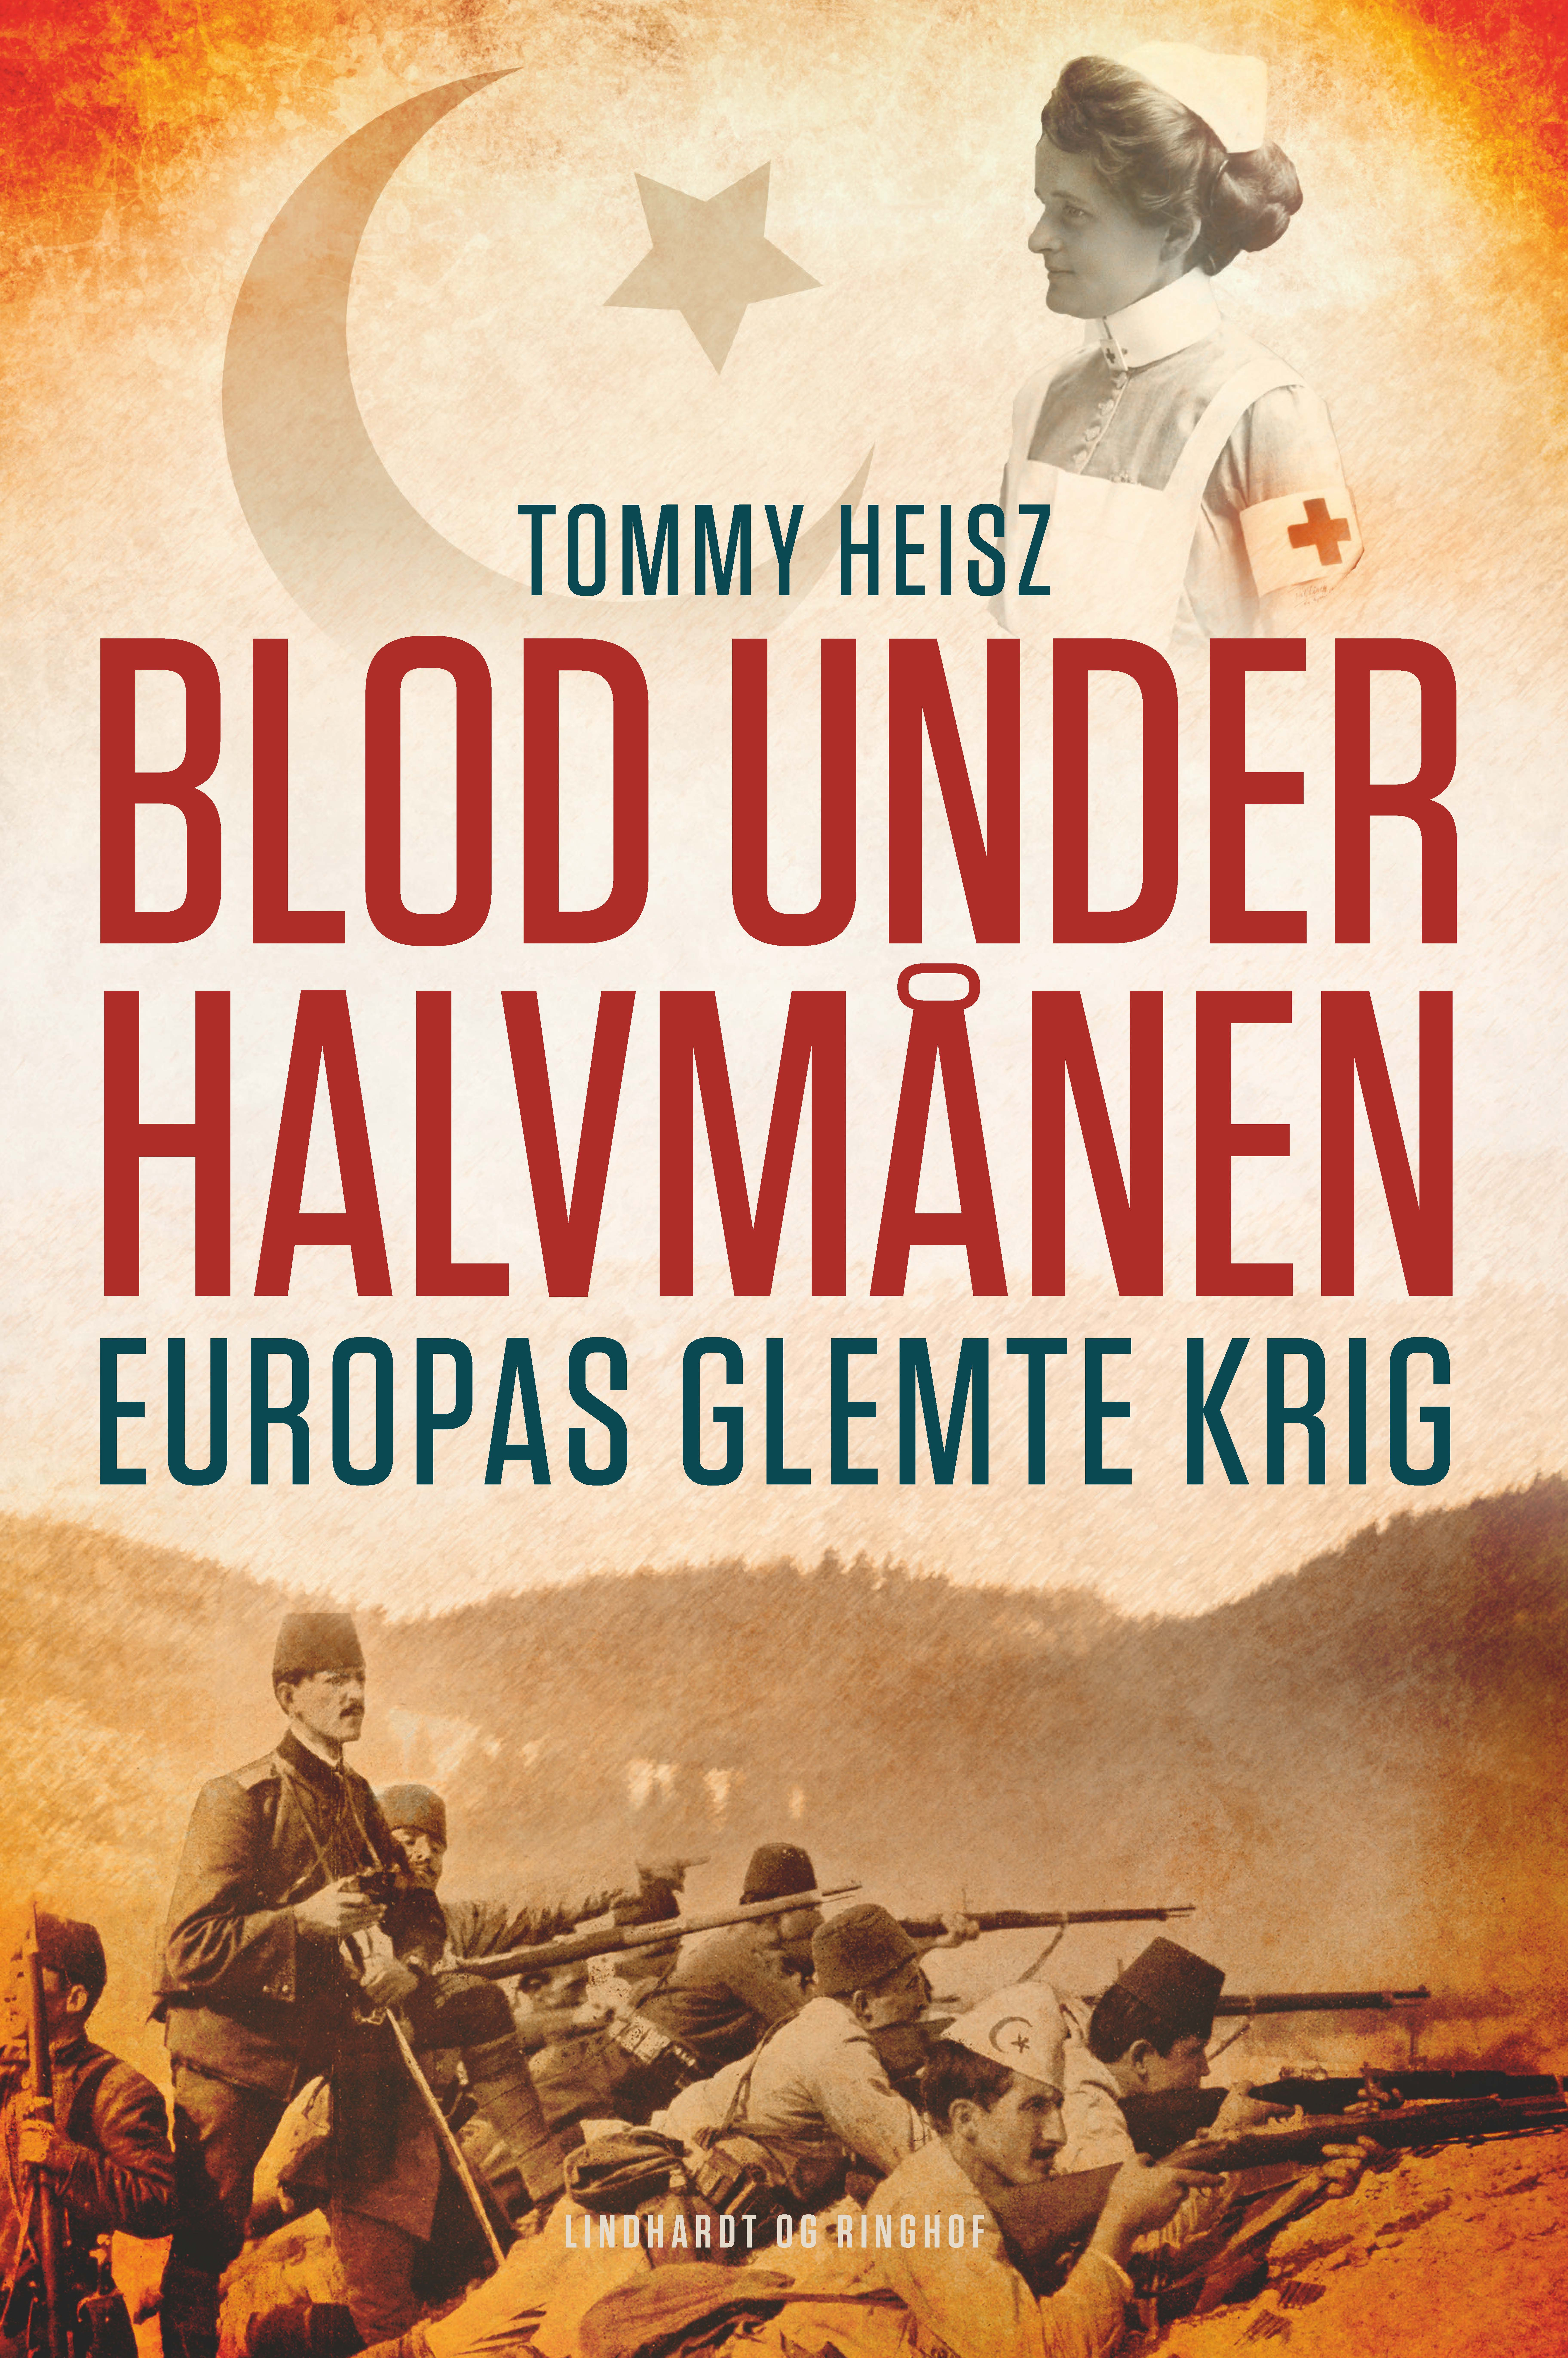 Tommy Heisz om "Blod under halvmånen": Historien skal fortælles gennem menneskers øjne